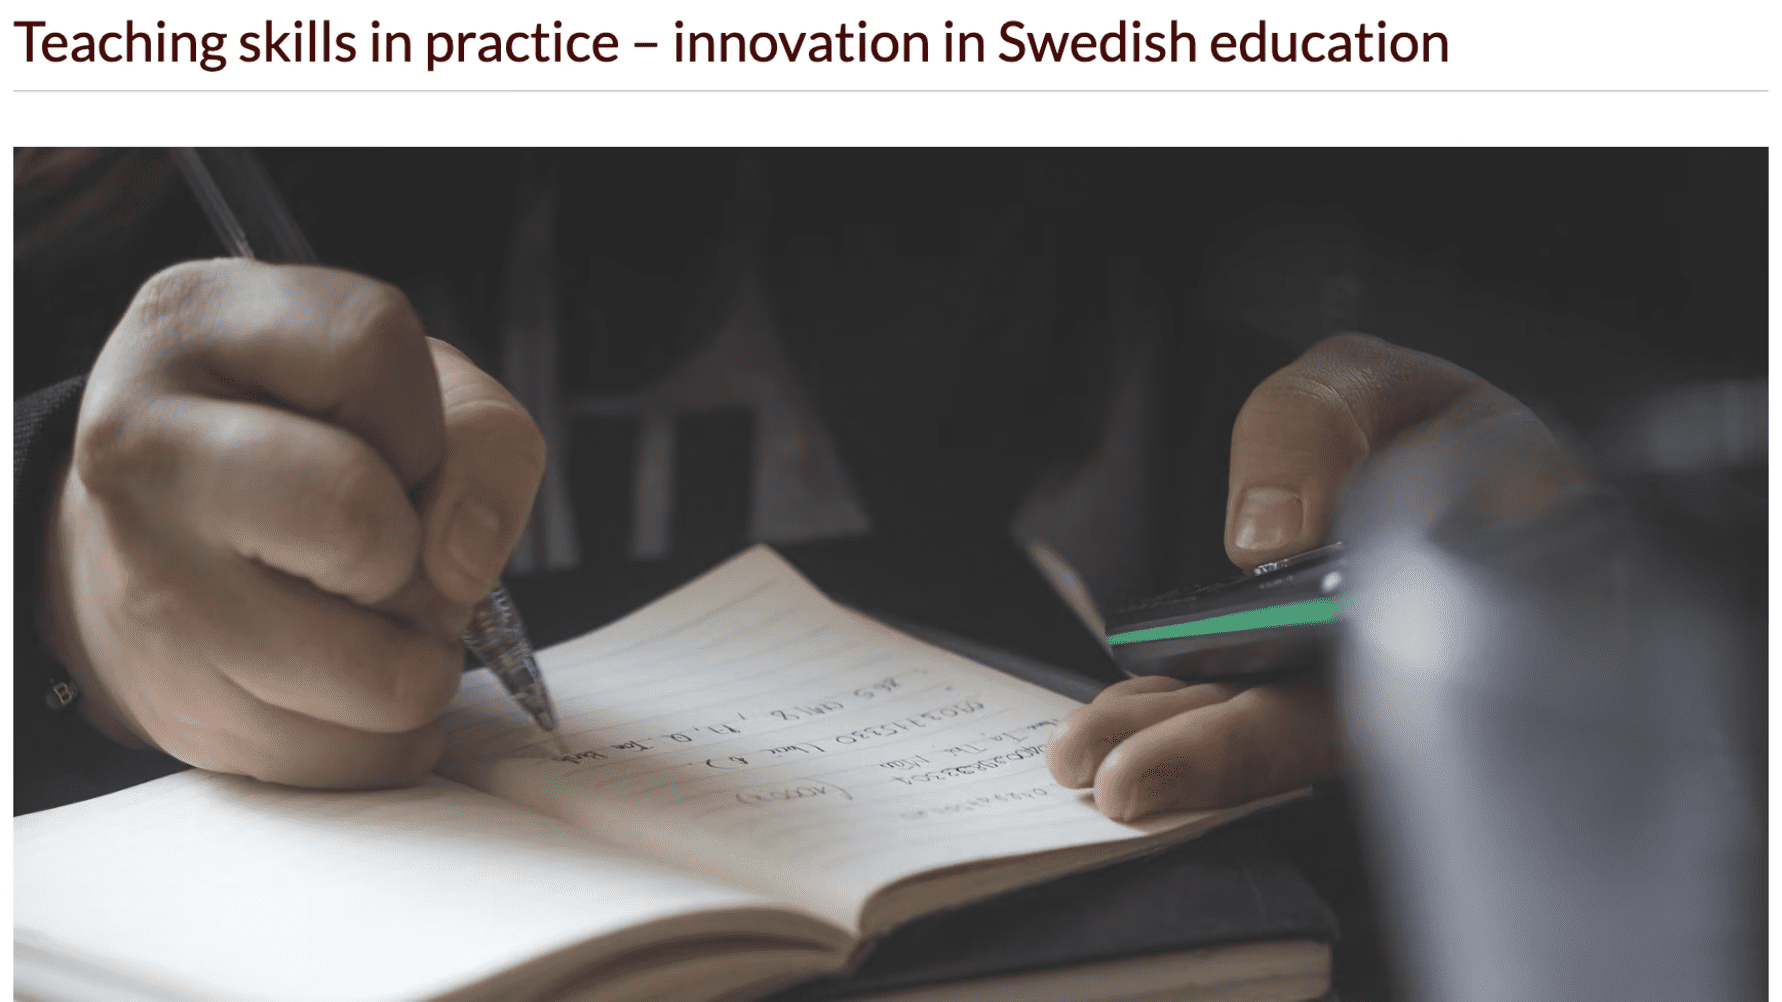 ”En innovation för svensk skola”- engelsk professor om Sveriges nya observationsunderlag